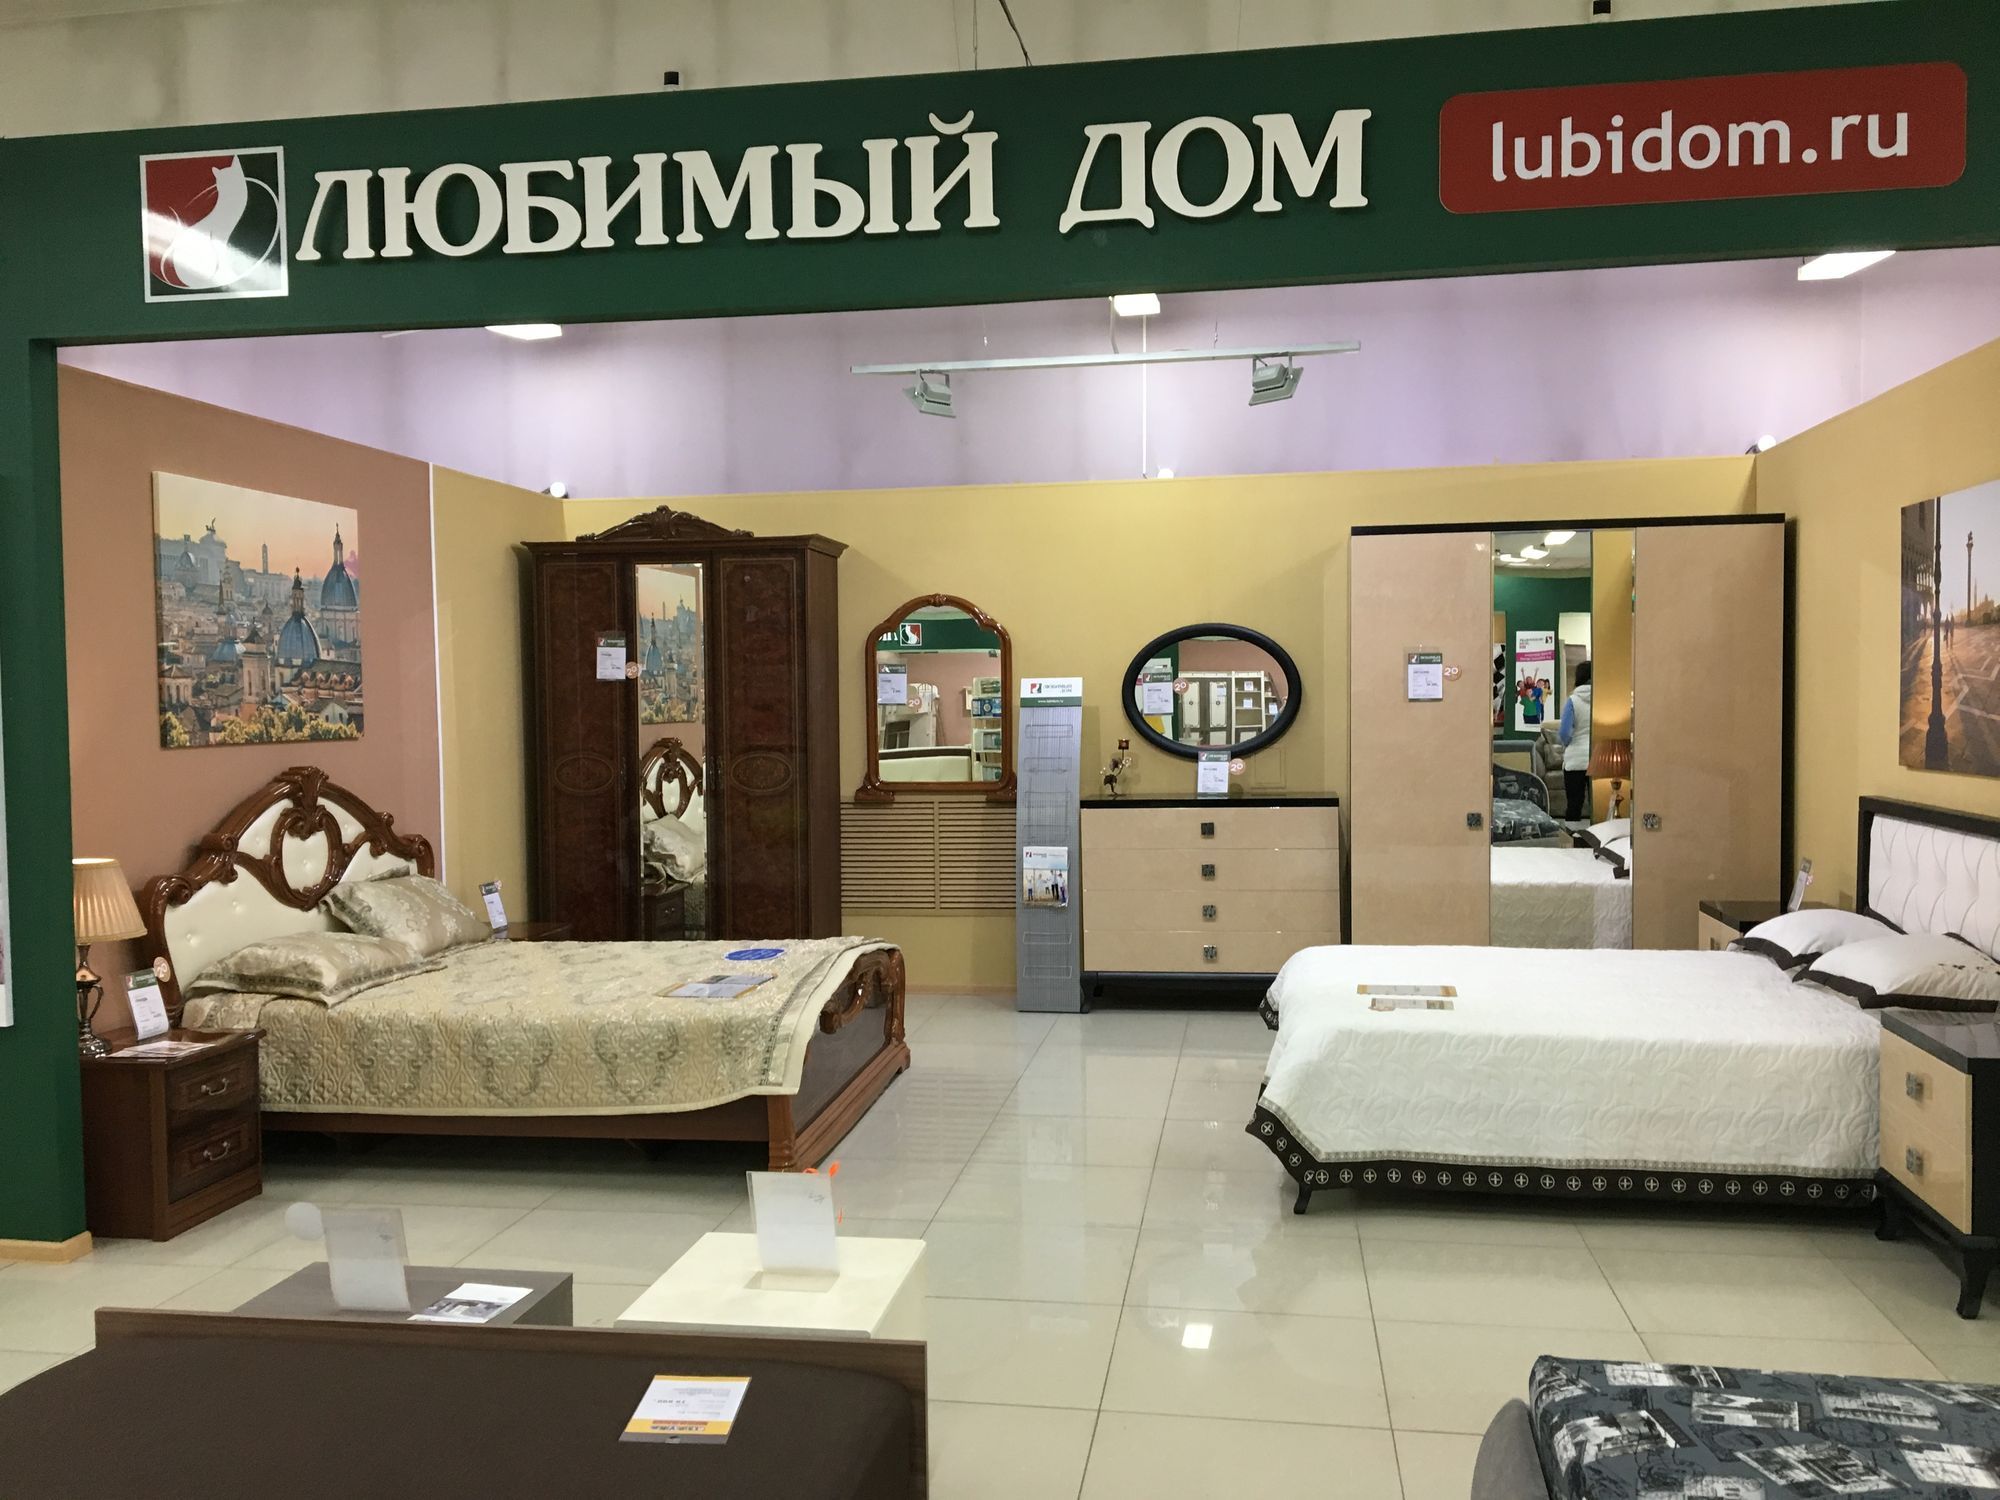 Азбука мебели якутск сайт